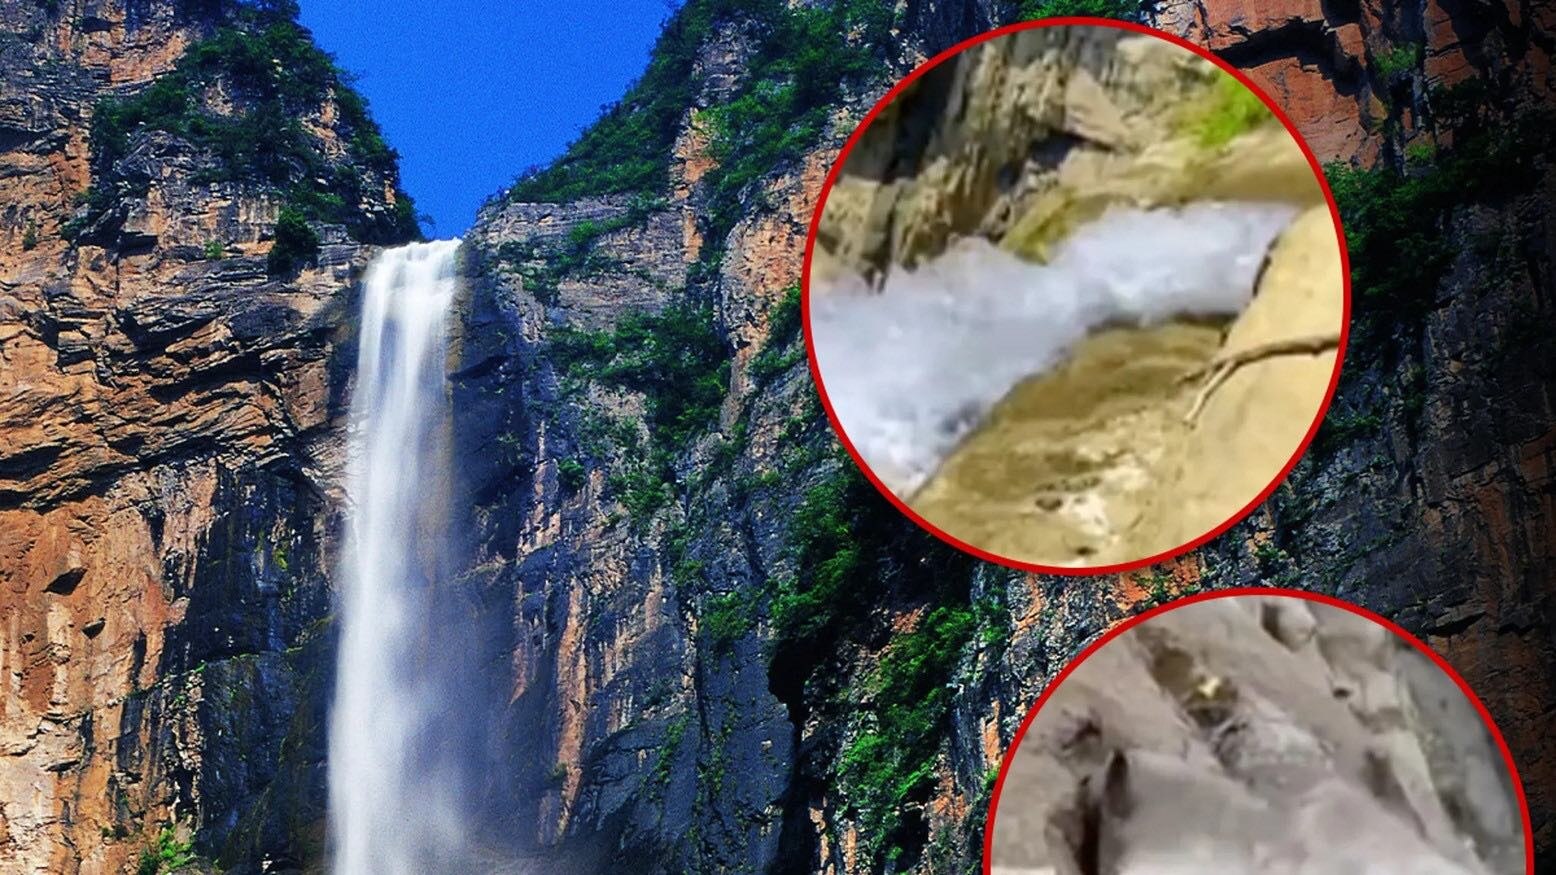 Một thác nước nổi tiếng của Trung Quốc đã khiến nhiều du khách thất vọng khi bí mật đằng sau sự hùng vĩ thường thấy gần đây đã bị một vlogger địa phương phát hiện.